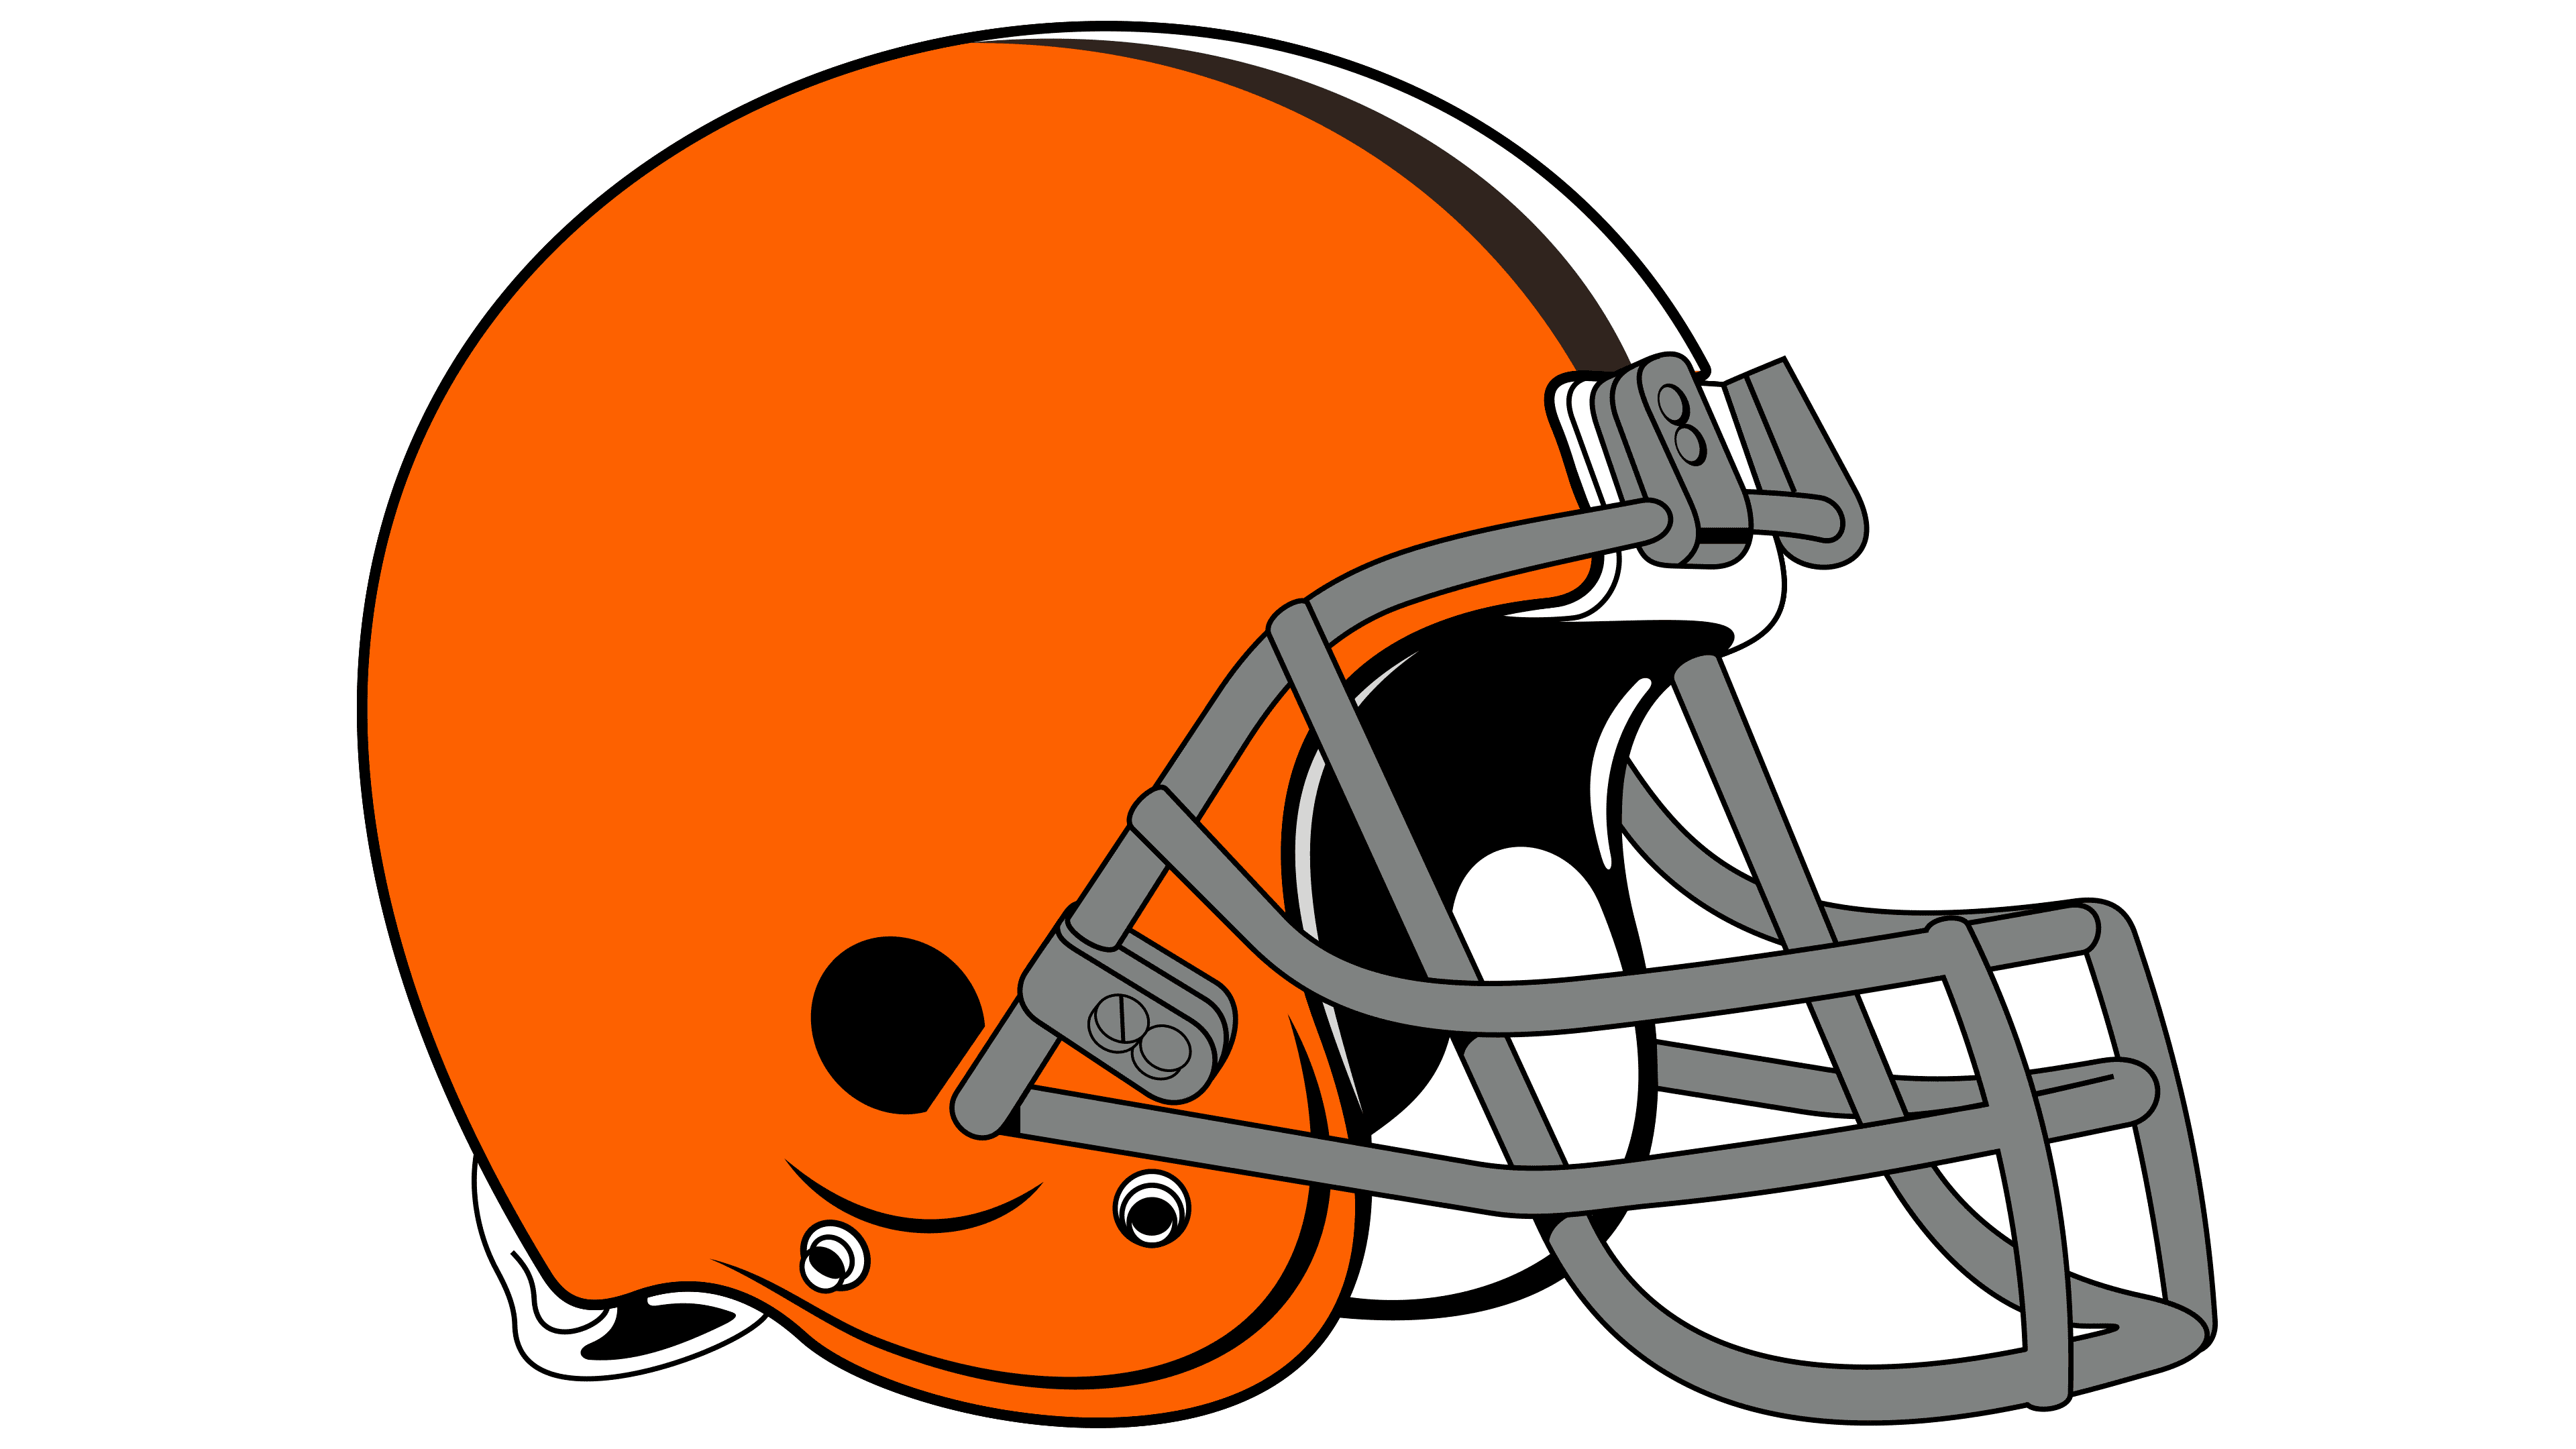 Cleveland Browns Logo PNG Image | PNG Mart